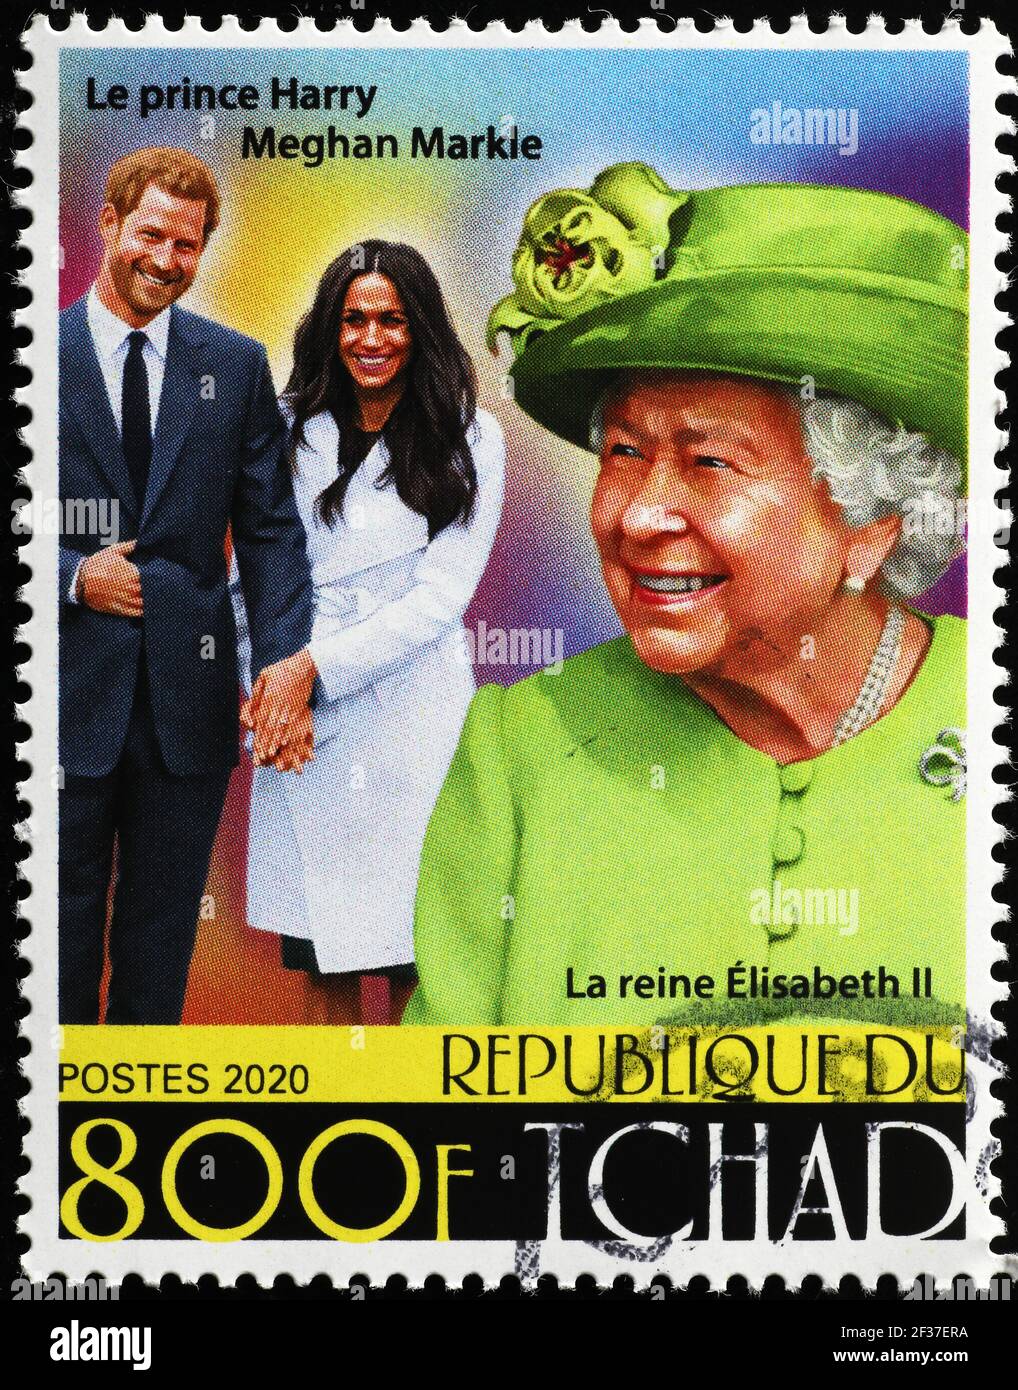 La reine Elizabeth II, Harry et Megan Markle sur le timbre-poste Banque D'Images